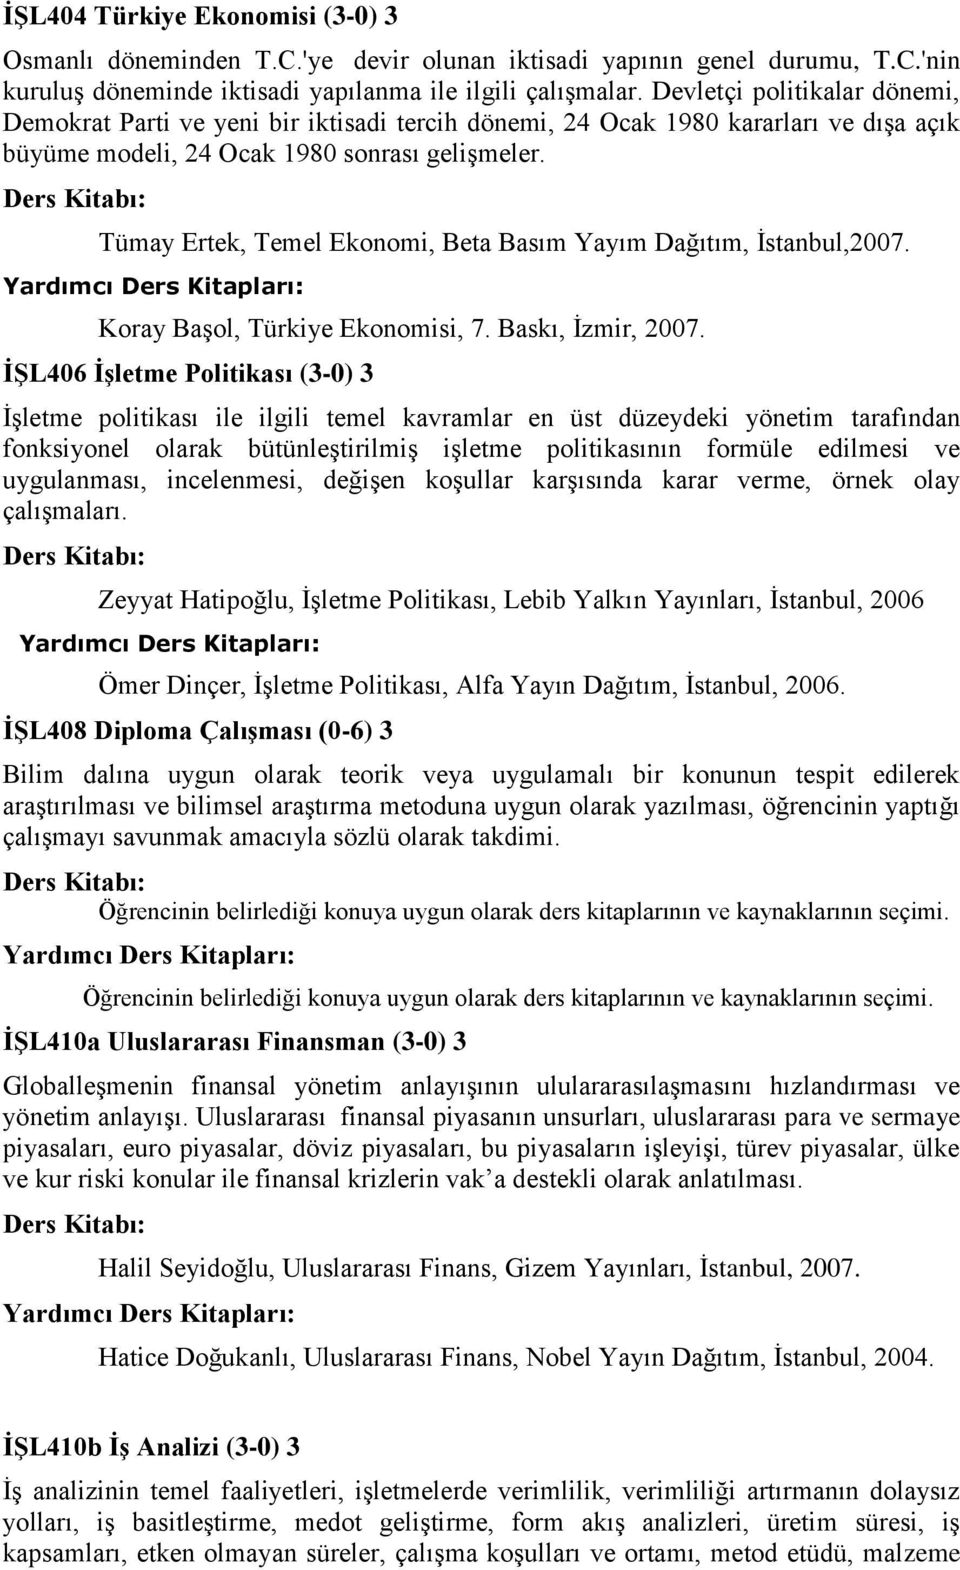 Tümay Ertek, Temel Ekonomi, Beta Basım Yayım Dağıtım, İstanbul,2007. Koray Başol, Türkiye Ekonomisi, 7. Baskı, İzmir, 2007.